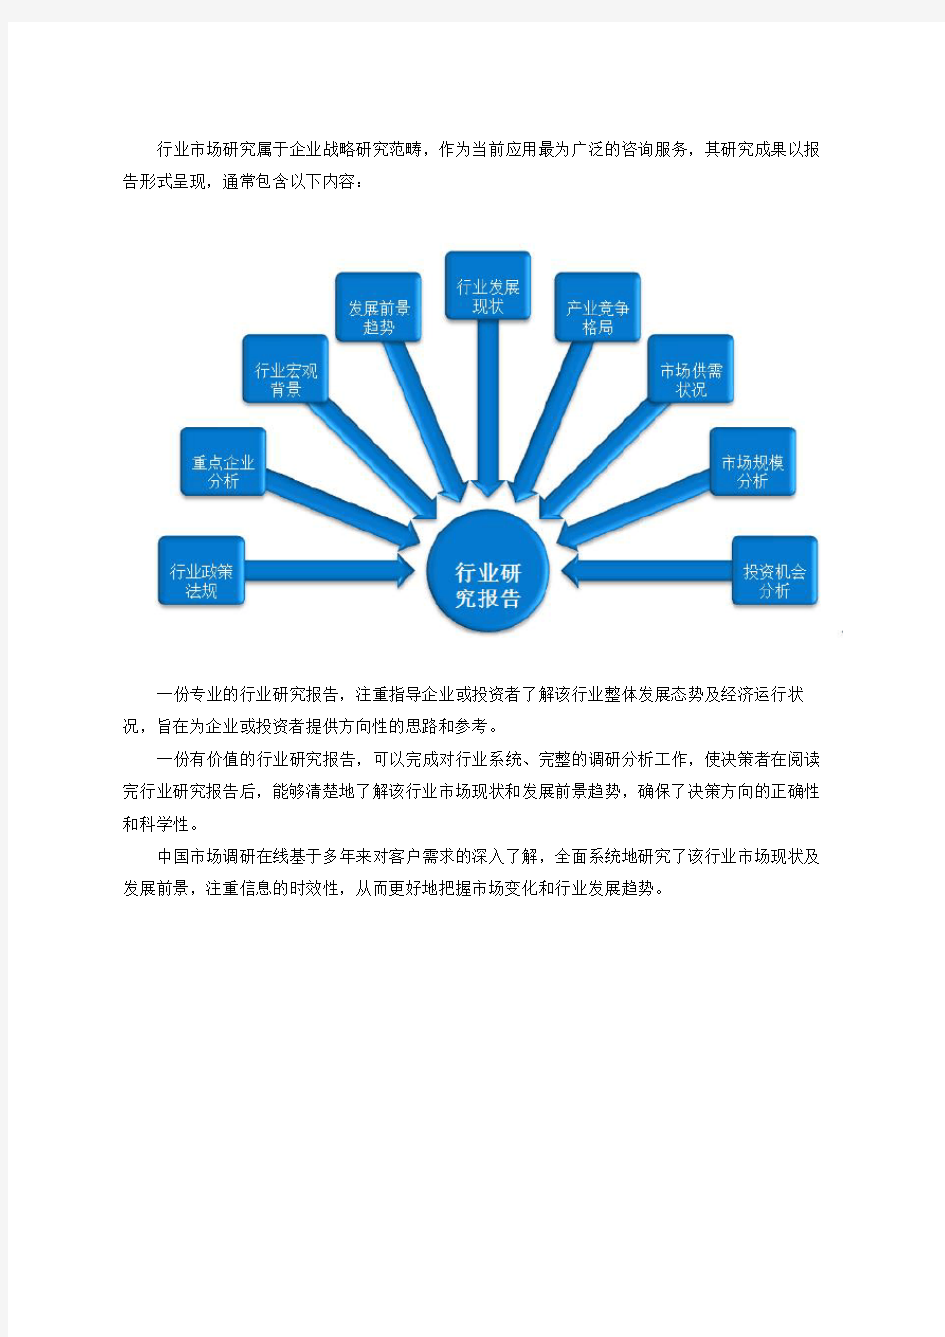 中国市政工程行业调查分析报告